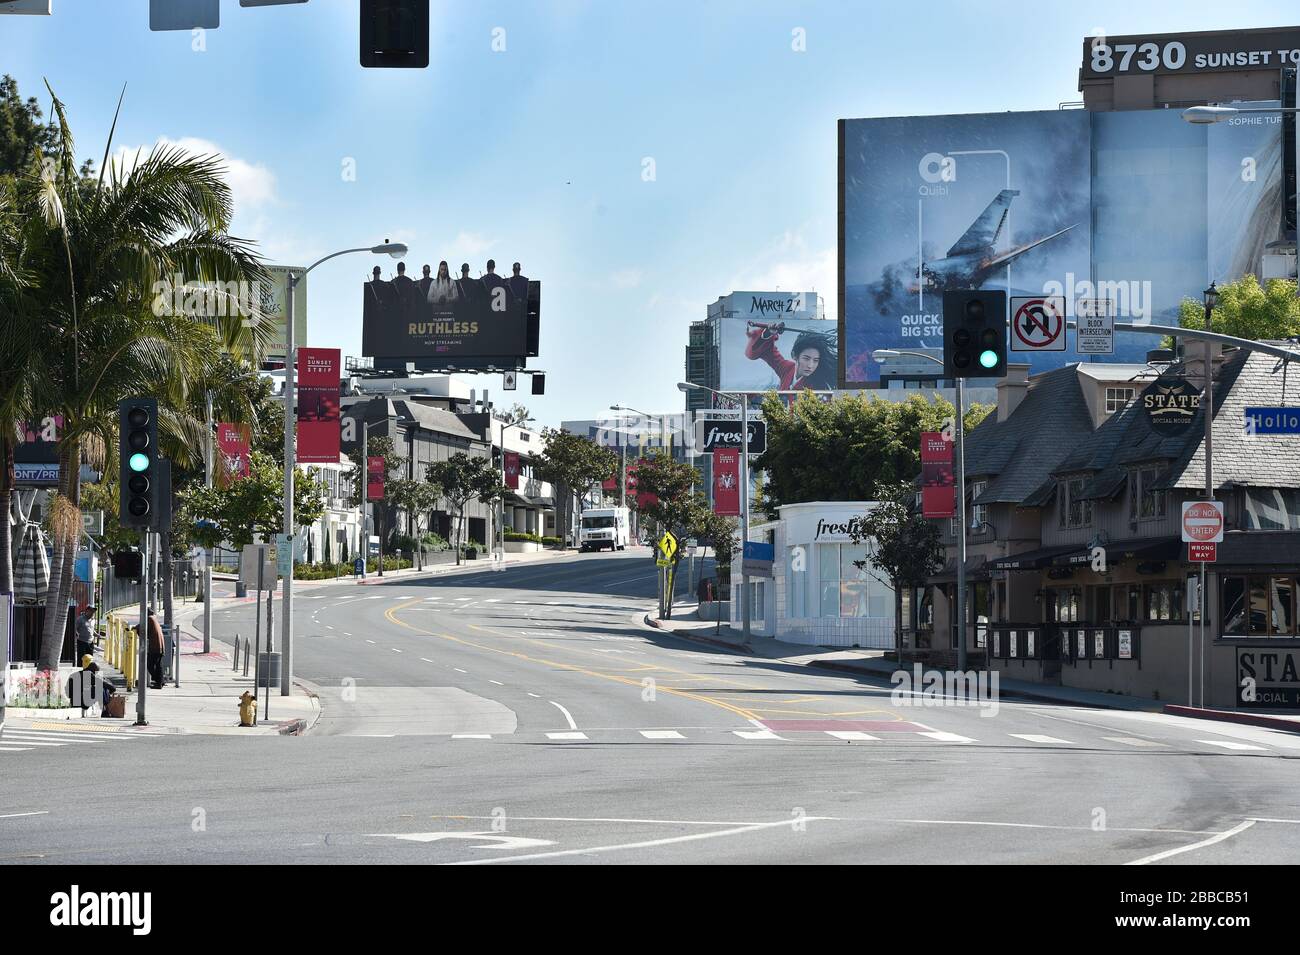 Sunset Blvd, vide pendant la pandémie de Covid-19. Los Angeles, Californie Banque D'Images